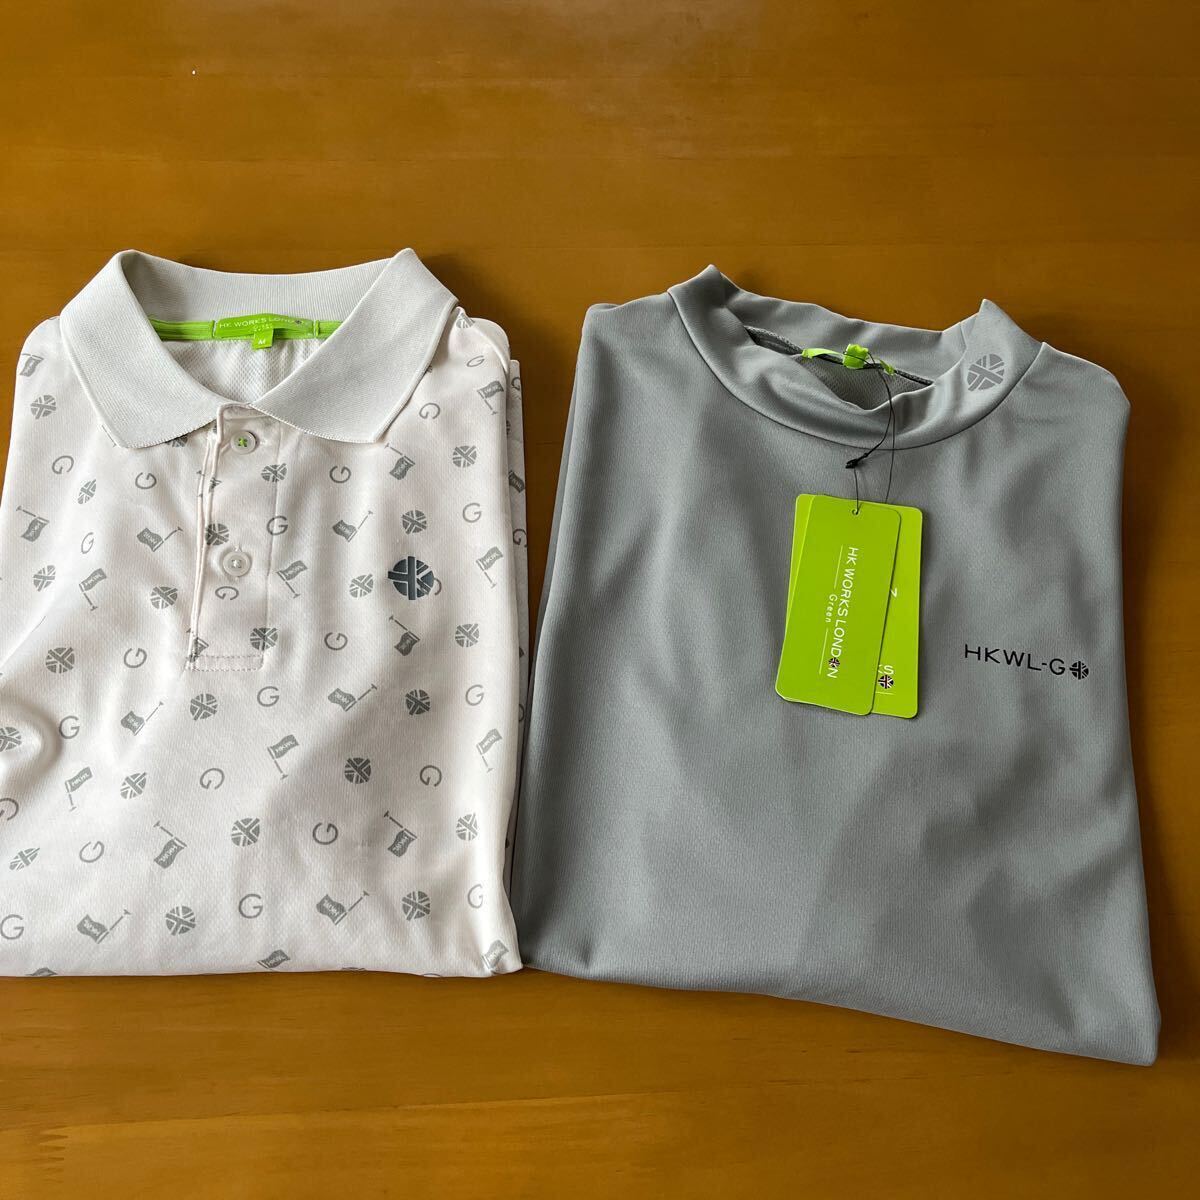 Mサイズ 春物新品 HK WORKS LONDON Green コシノ ヒロコ GOLF ゴルフ サラッと快適 3WAYシャツ二枚セットの画像7